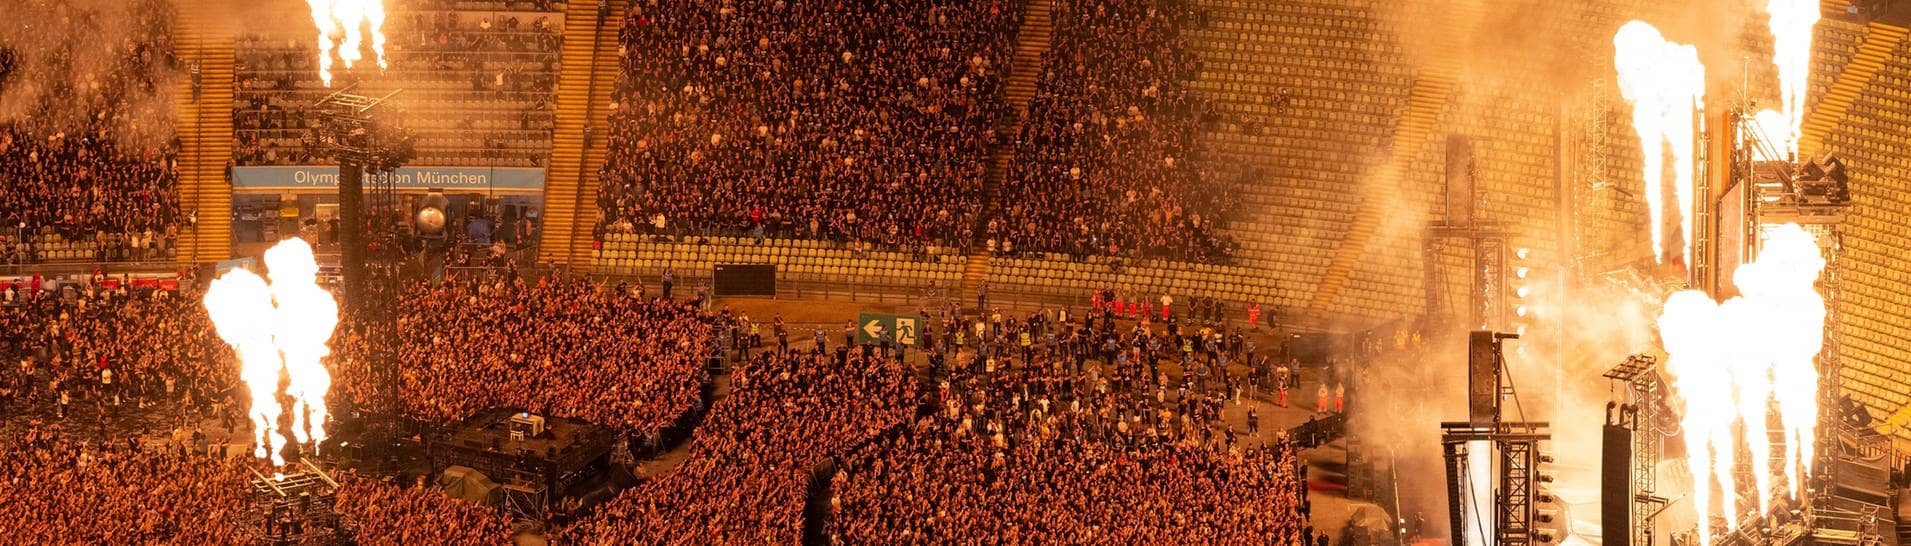 Zuschauer im ausverkauften Olympiastadion in München verfolgen das Rammstein-Konzert. Feuerwerke gehen an der Bühne und in der Mitte in die Luft.  (Foto: dpa Bildfunk, picture alliance/dpa | Sven Hoppe)